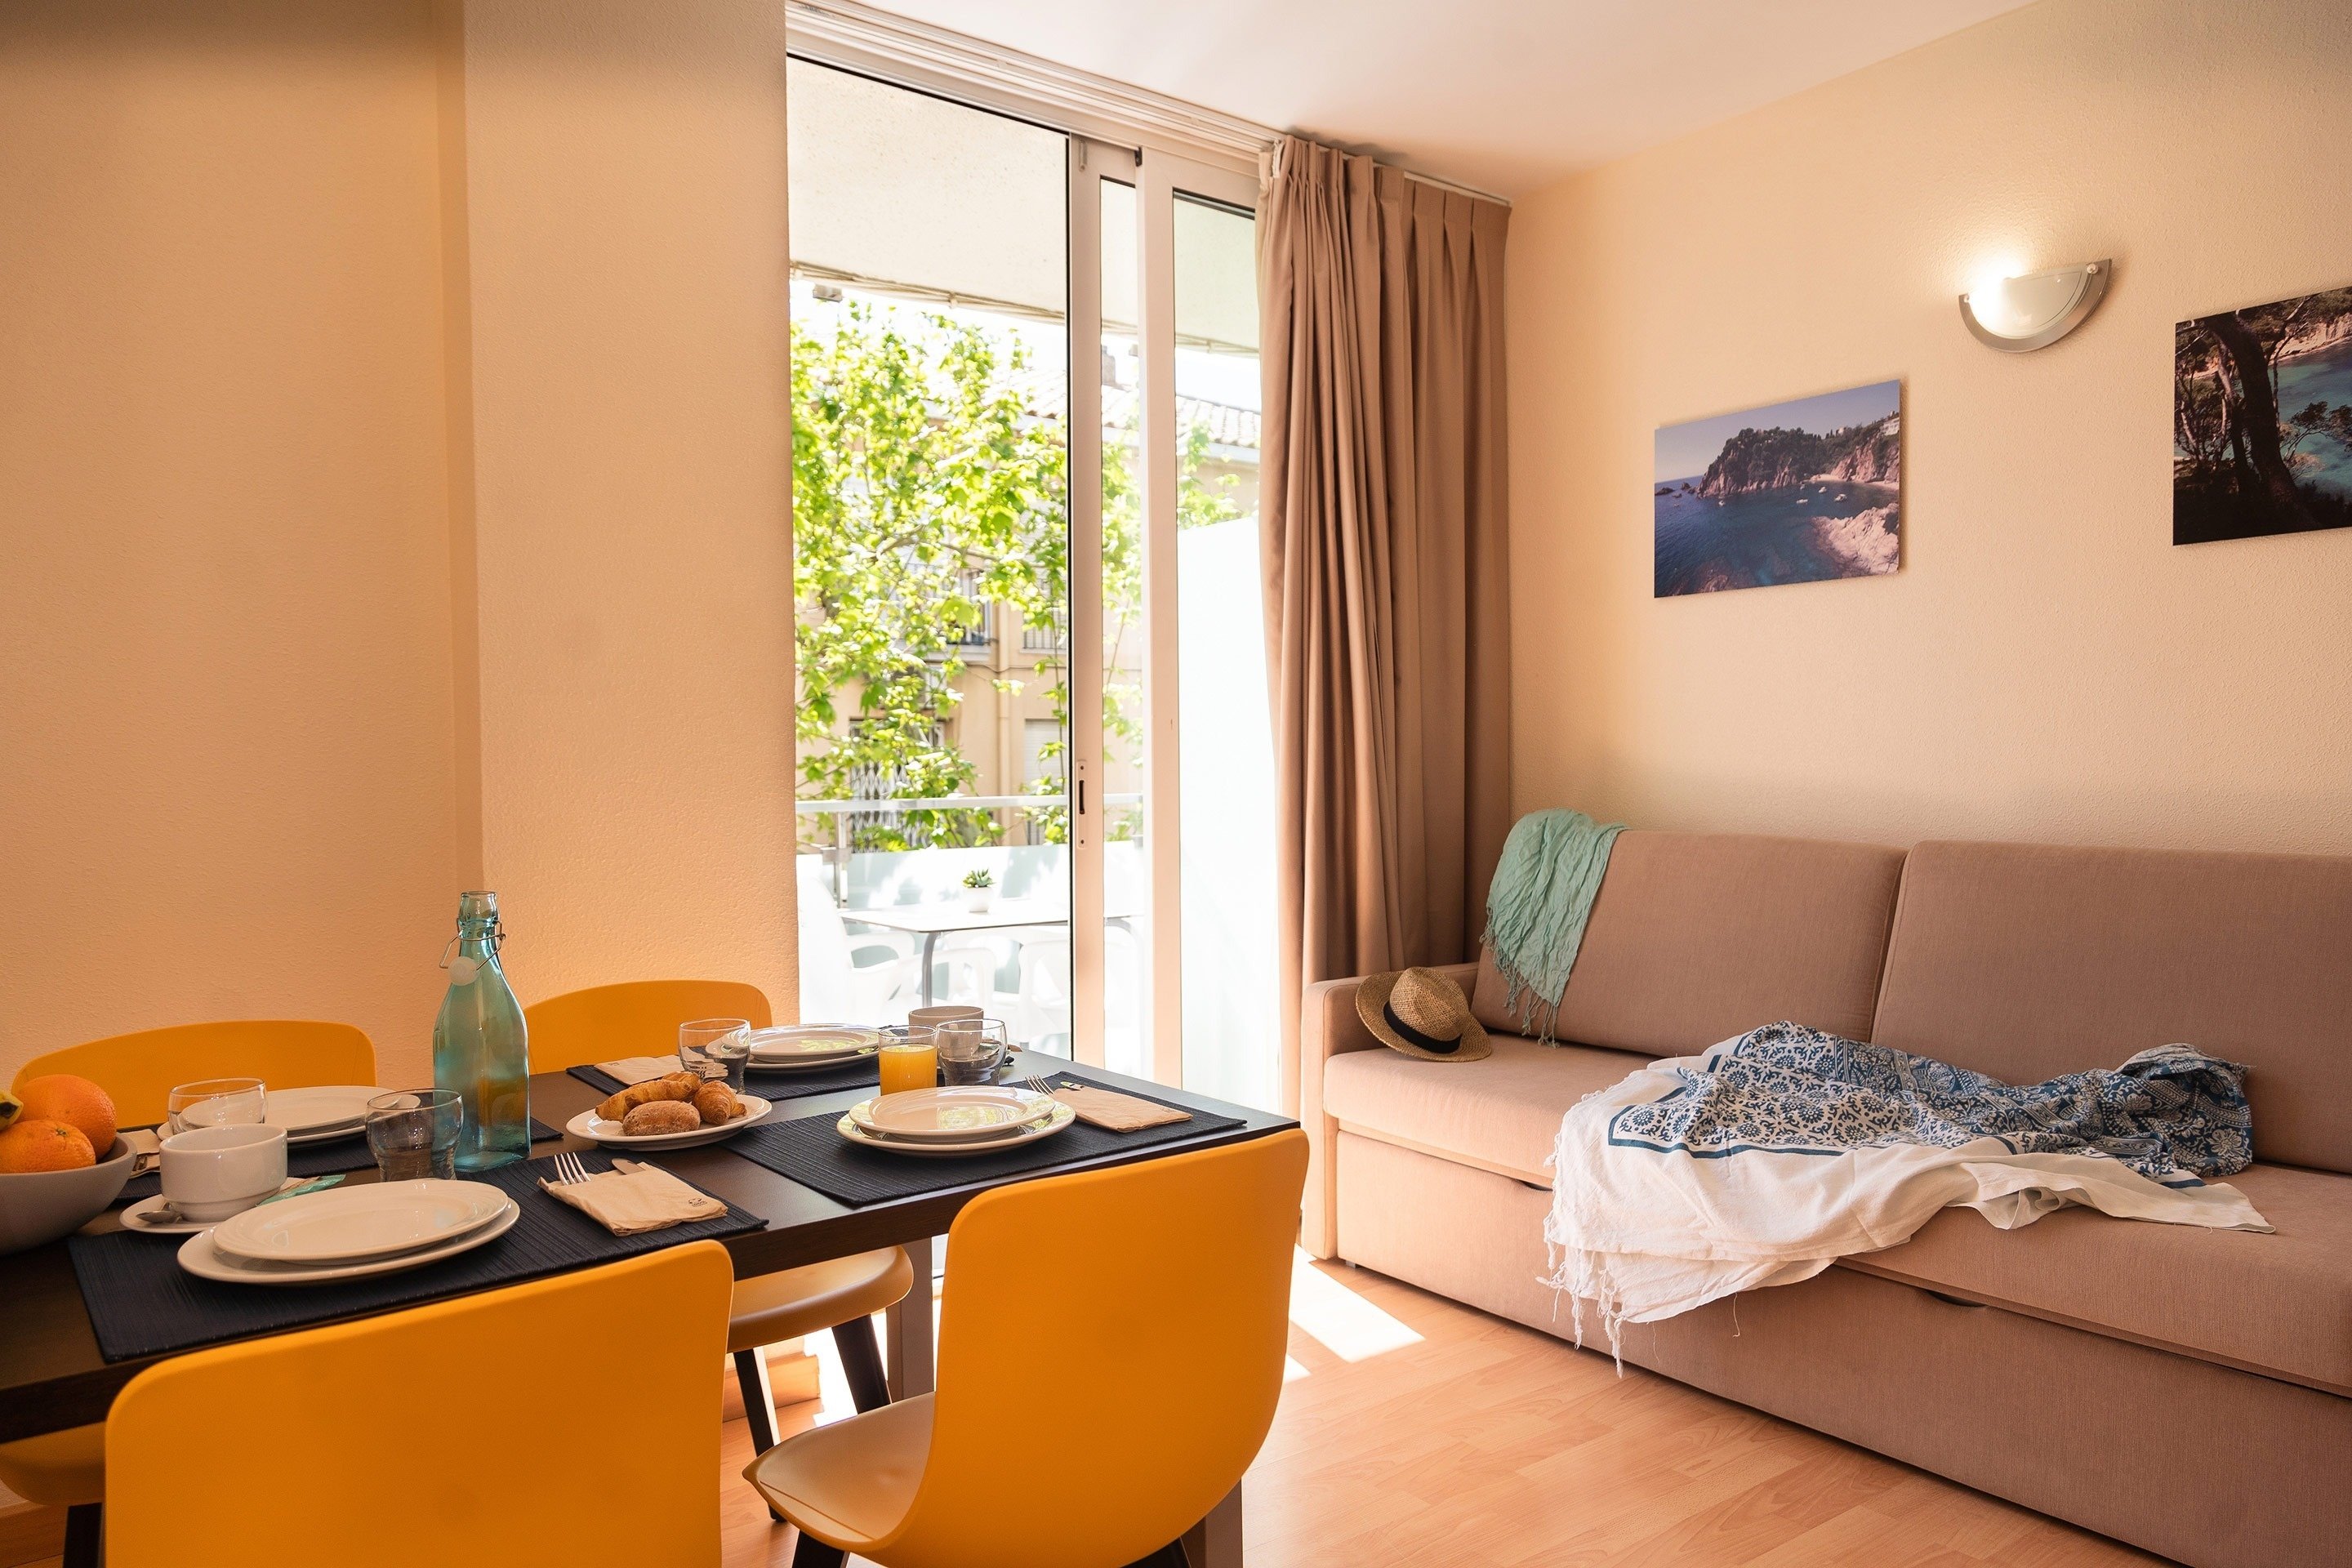 Apartment with balcony near the sea, Ona Palamós (Costa Brava, Girona)